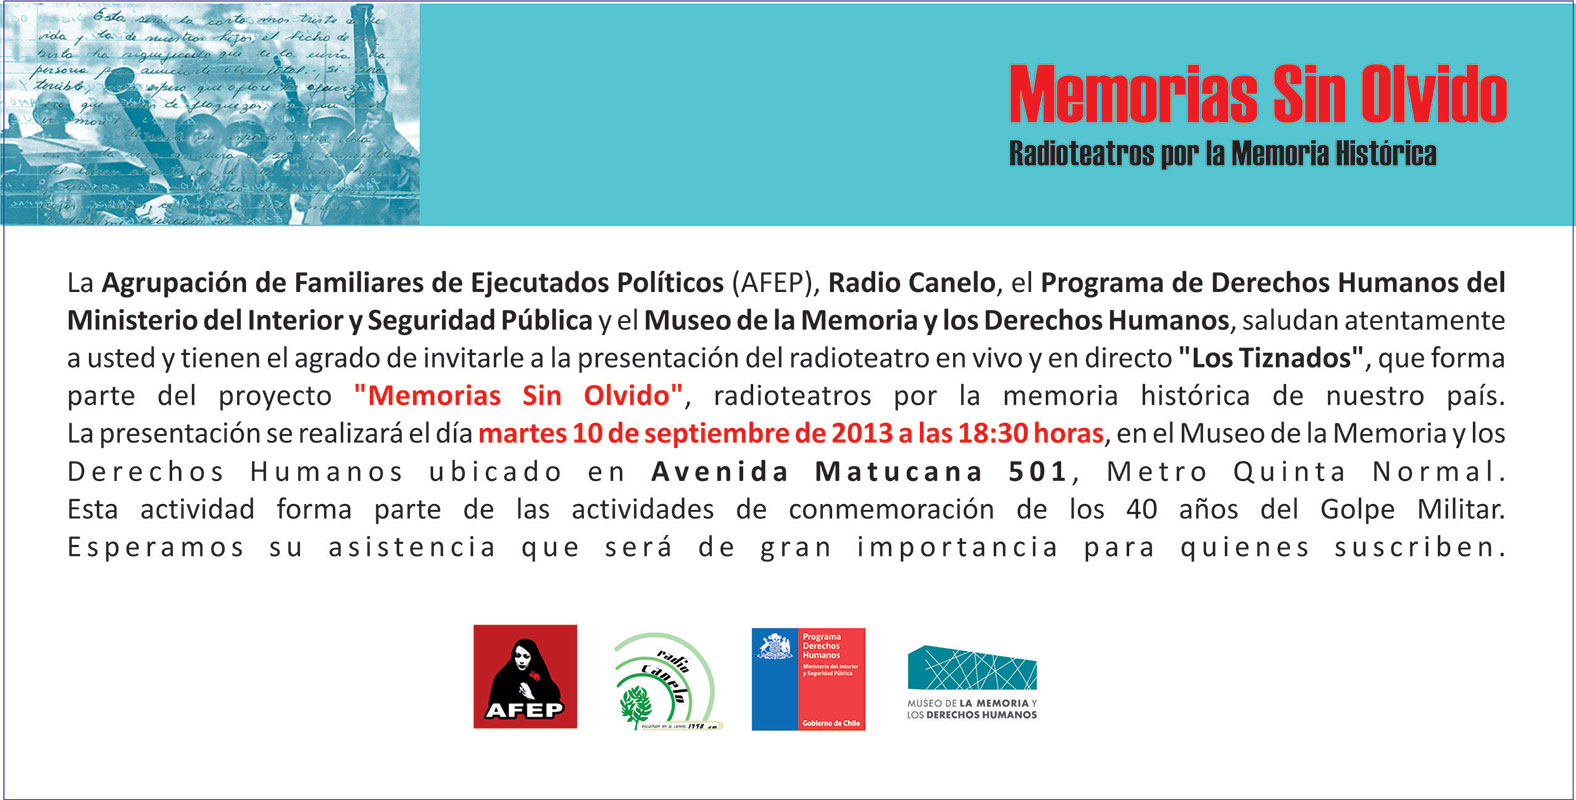 Radio Teatro Memorias sin Olvido